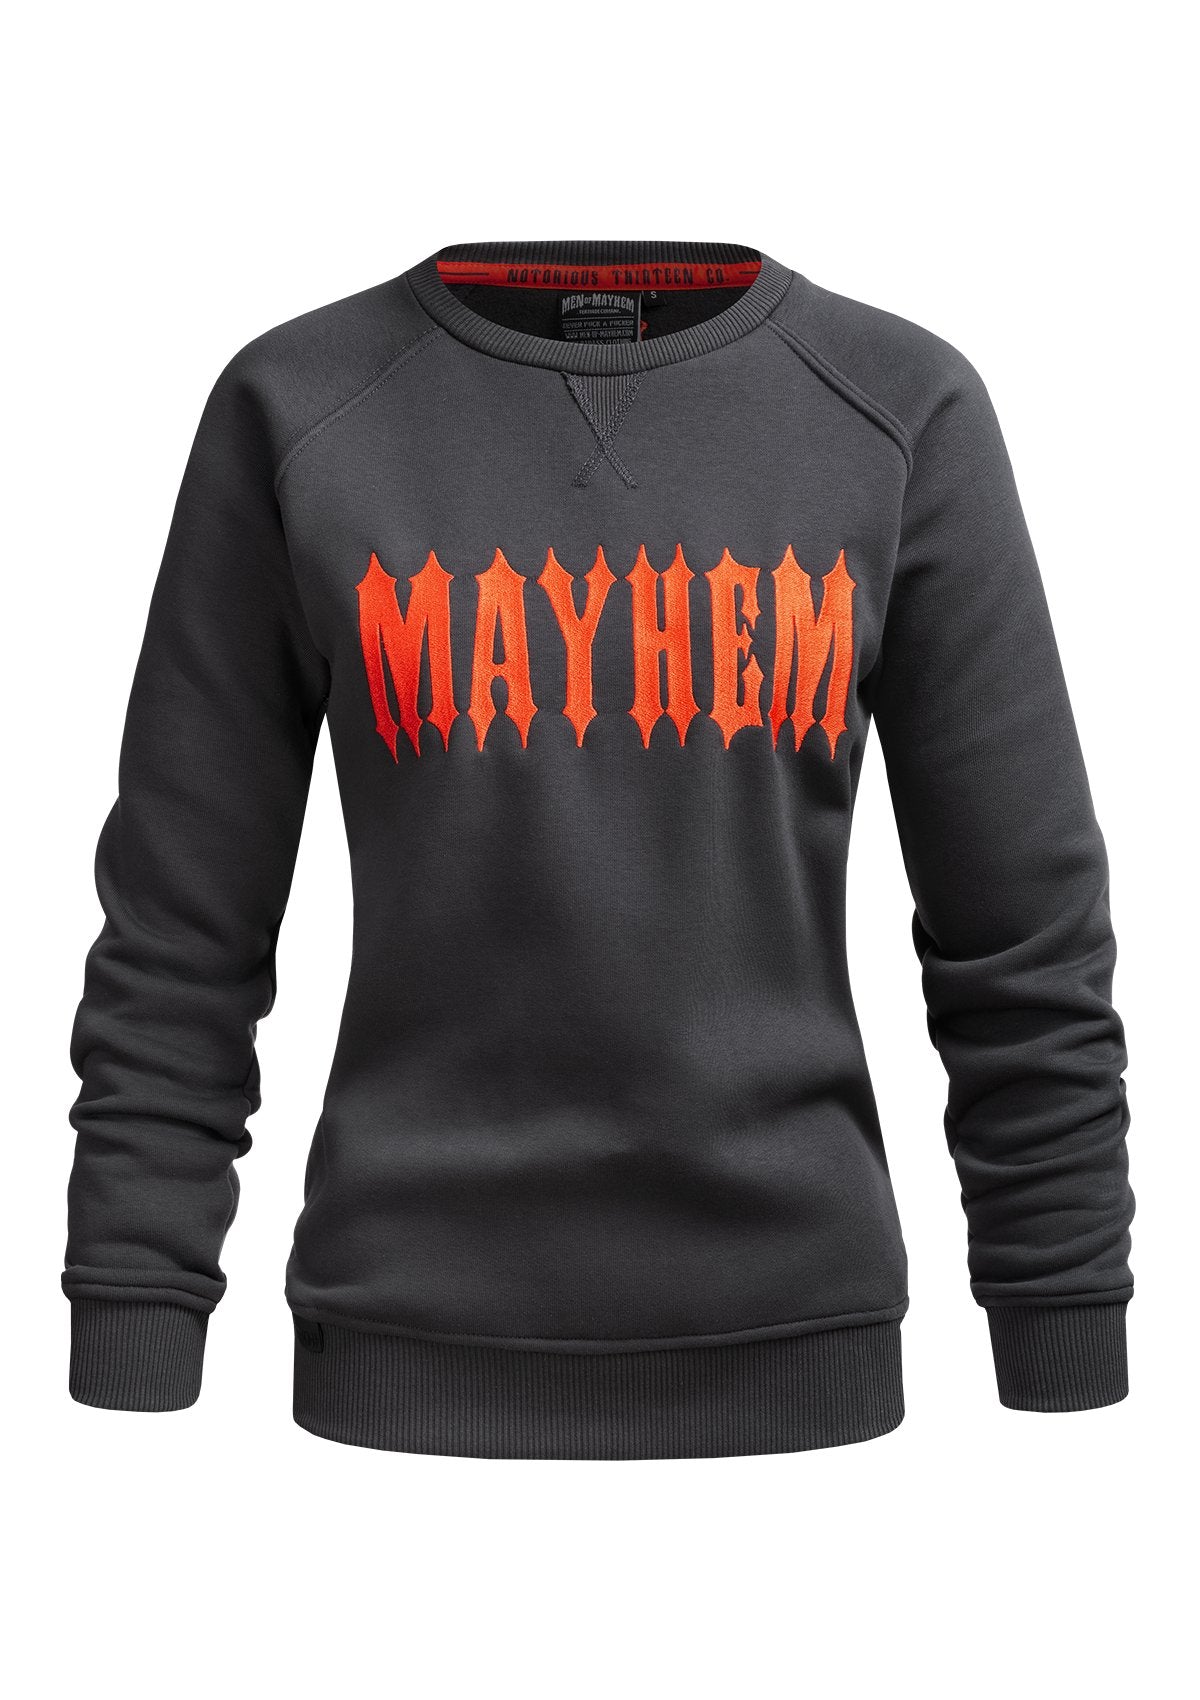 Women Crewneck Mayhem G/O - MEN OF MAYHEM - ALAIKO-EXCHANGES-MM-W-2040-MC-GO - Grau - grey